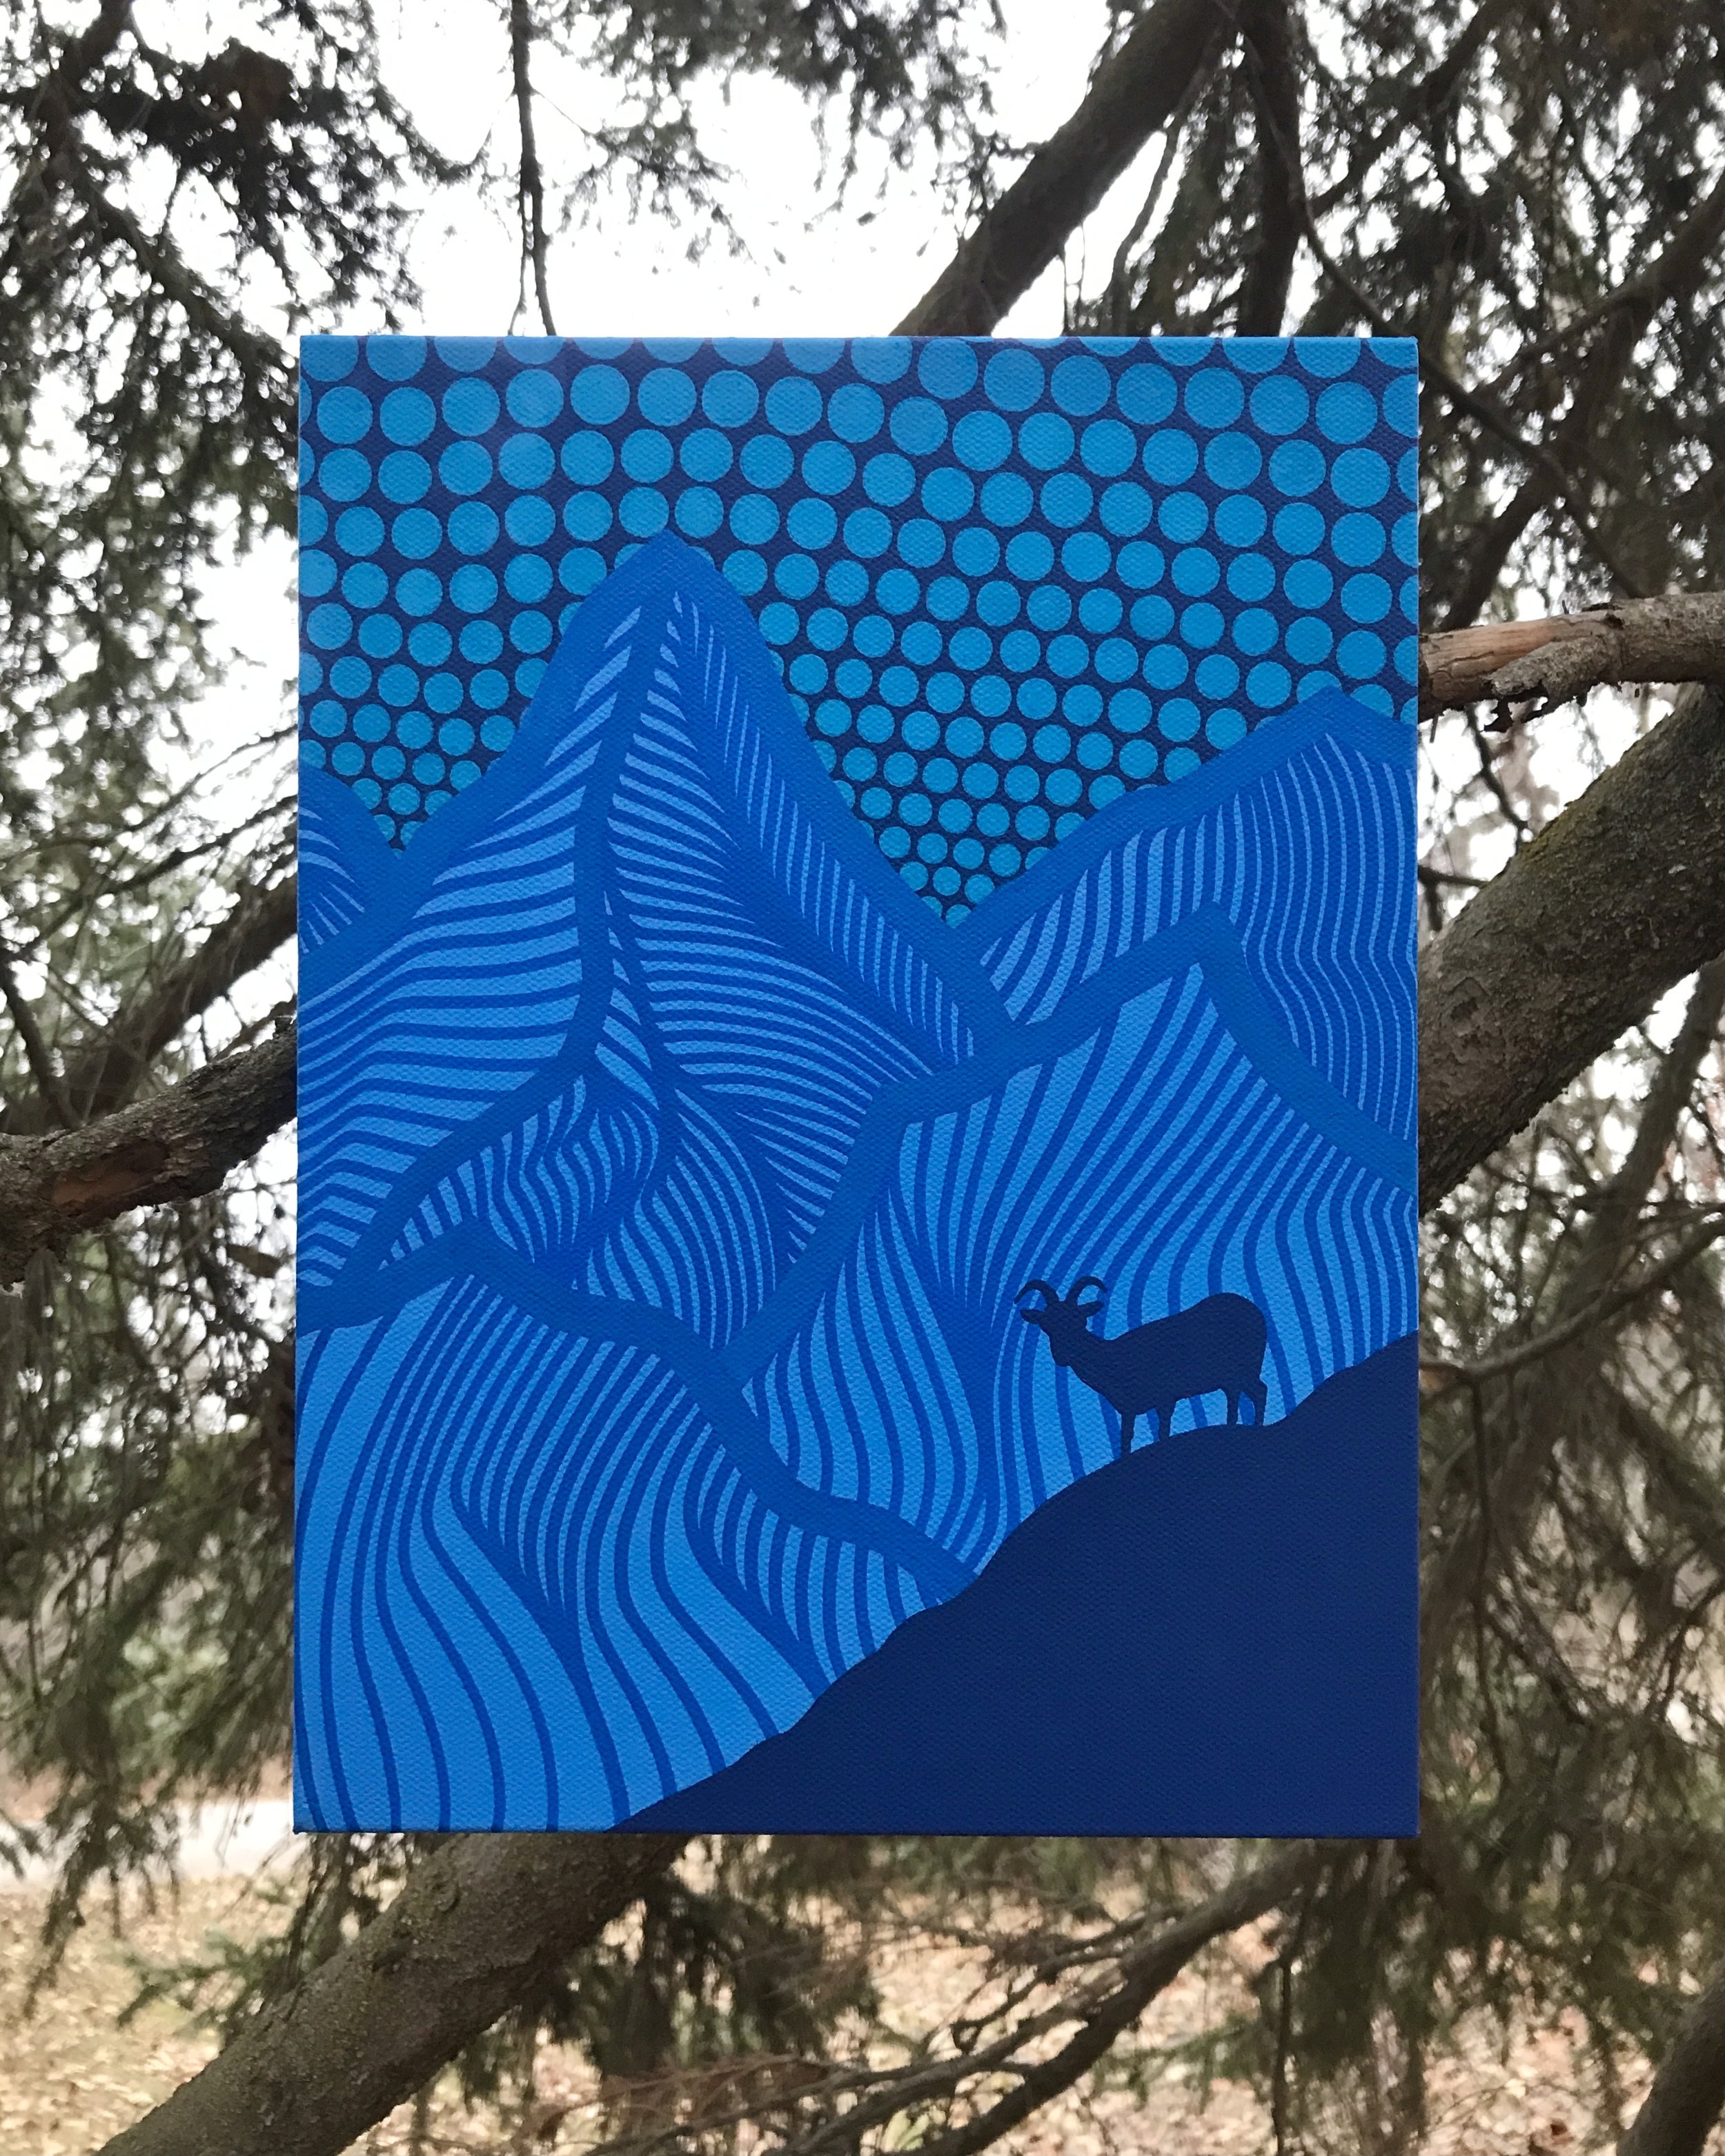 High Rise, acrylic on canvas, 12"x 9"